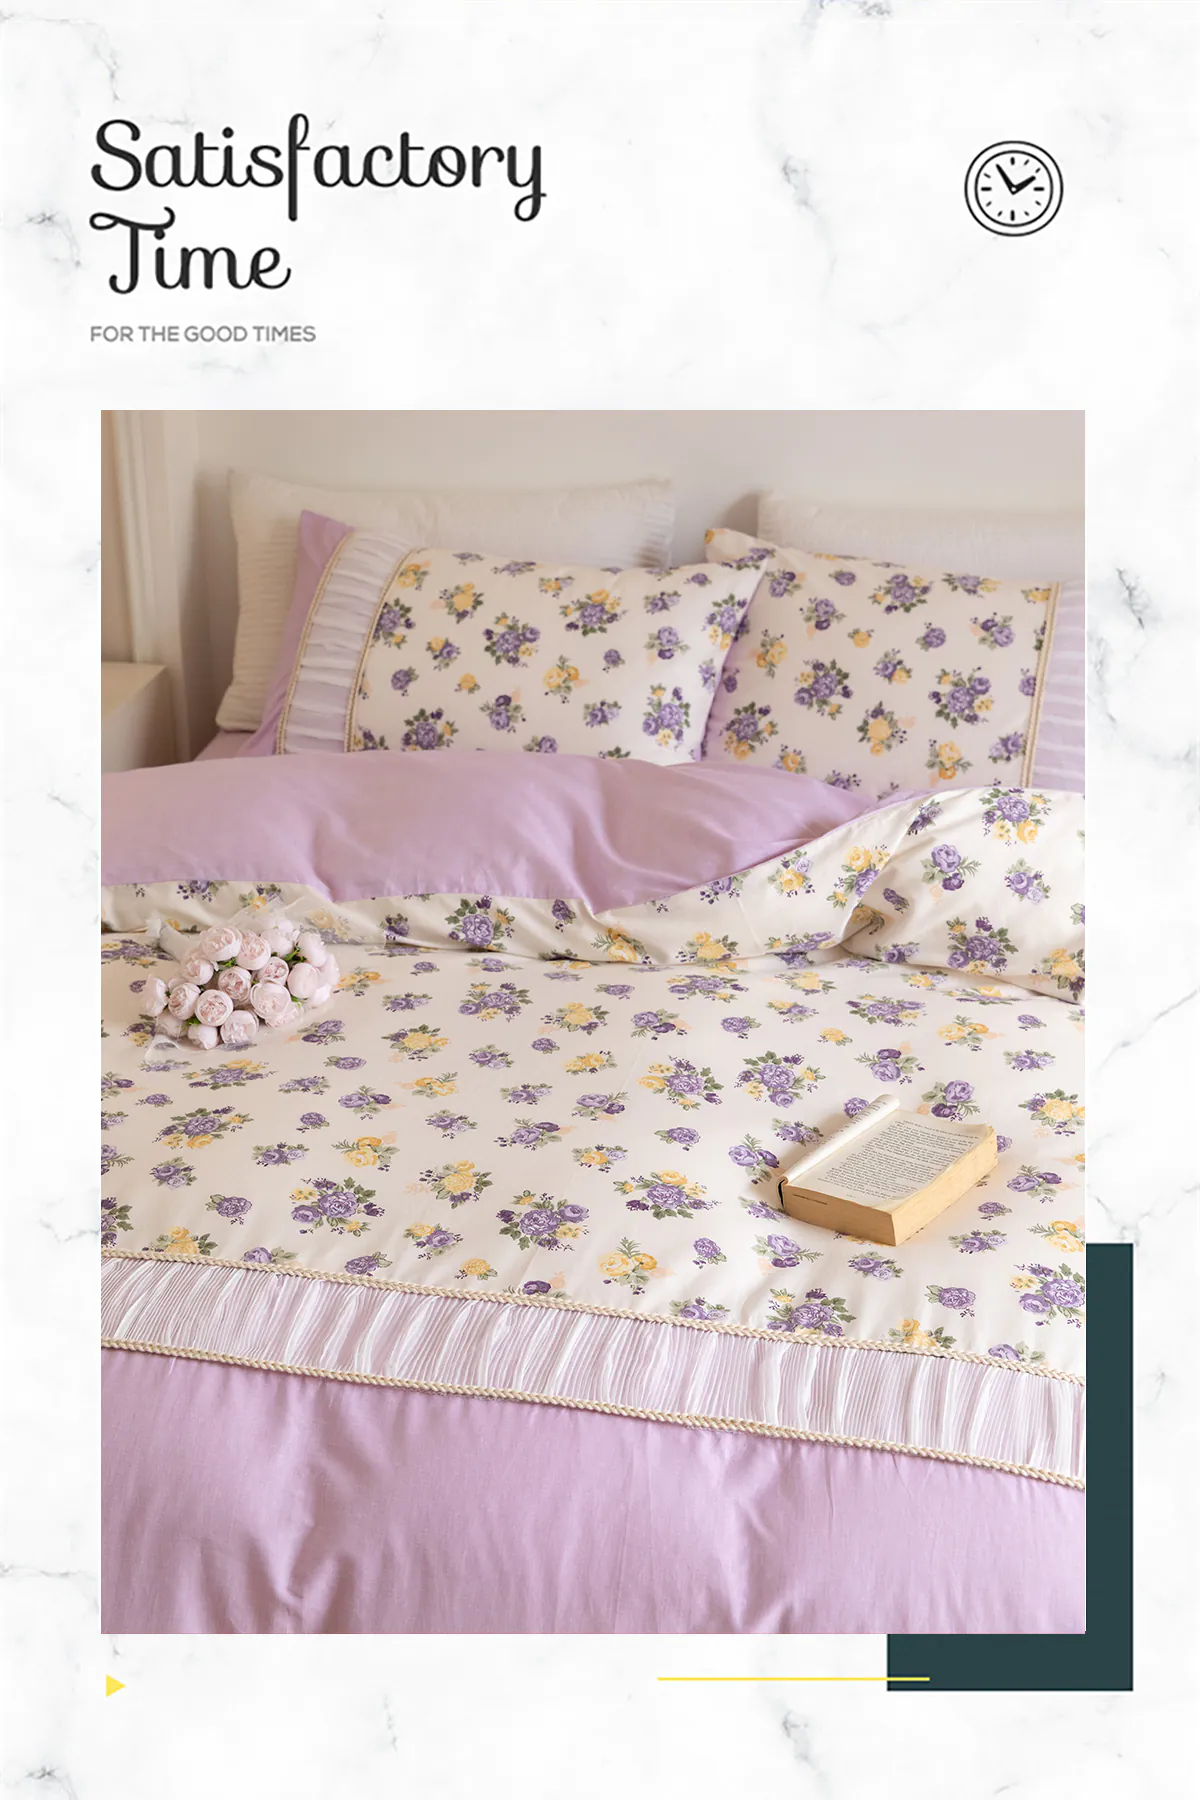 Retro-Princess-Style-100-Cotton-Floral-Duvet-Cover-Bedding-Set26